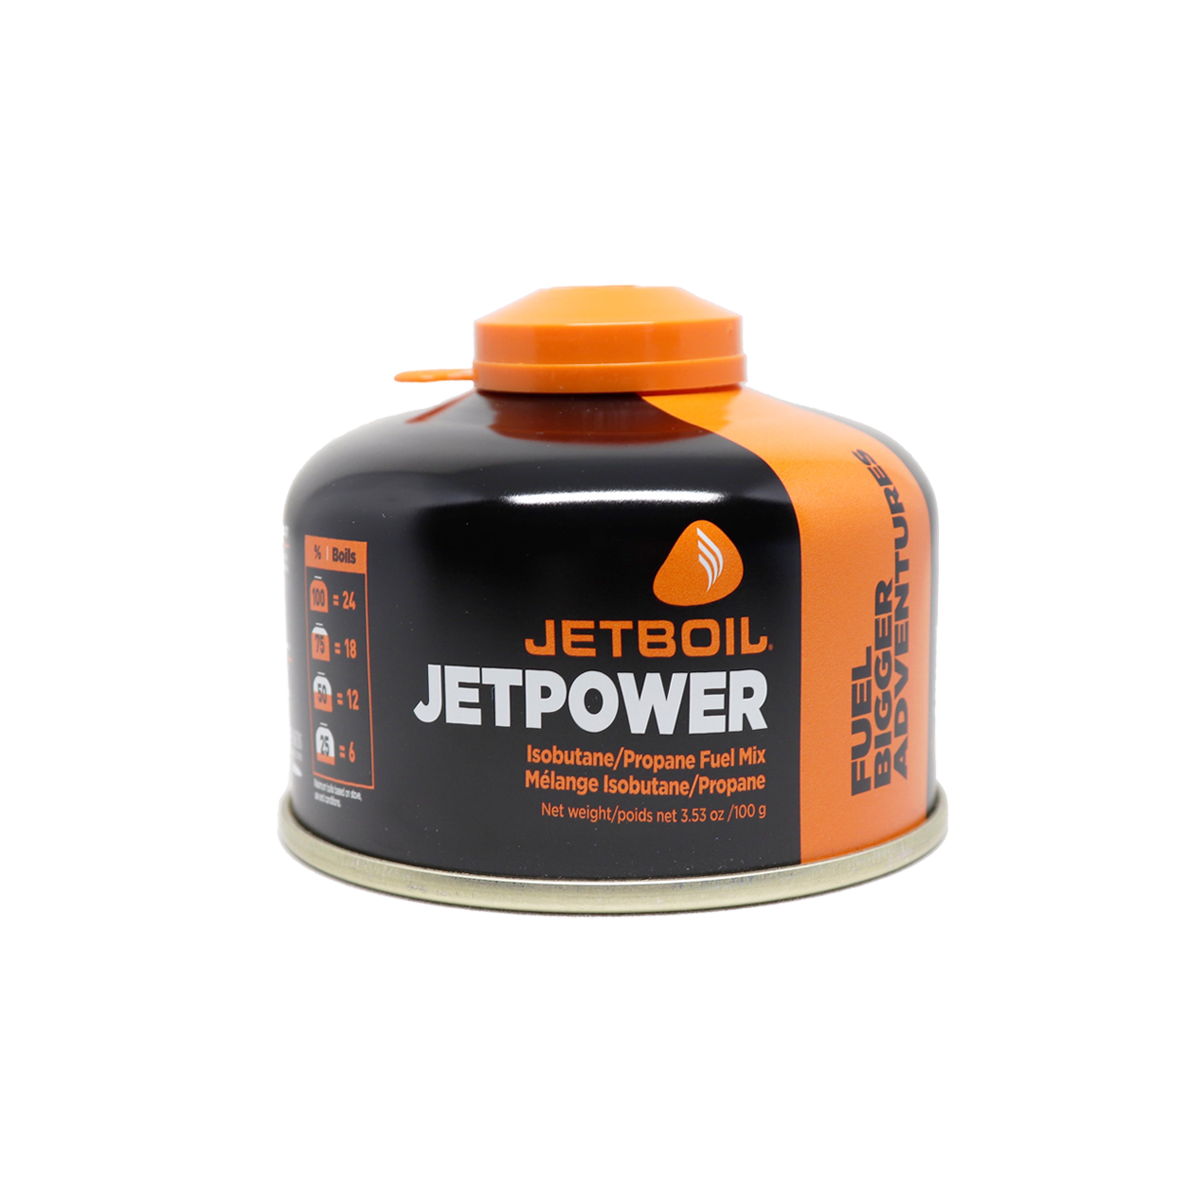 Jetboil Jetpower Fuel - Cartouche de fuel | Hardloop